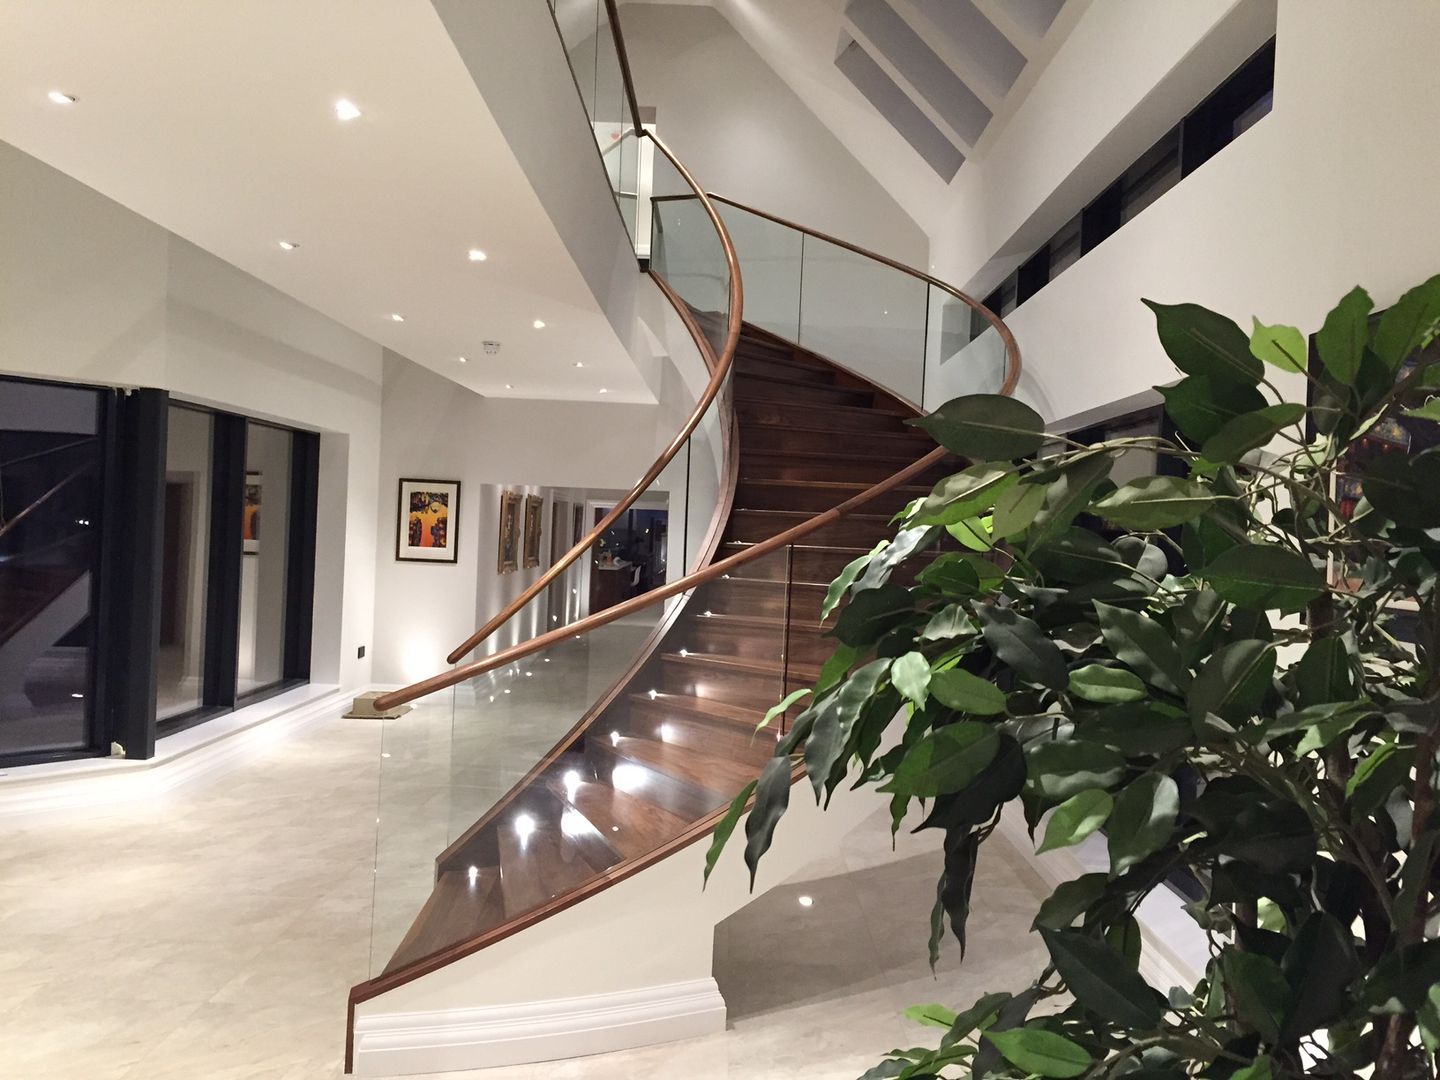 Luxury Staircase, Haldane UK Haldane UK Modern Corridor, Hallway and Staircase